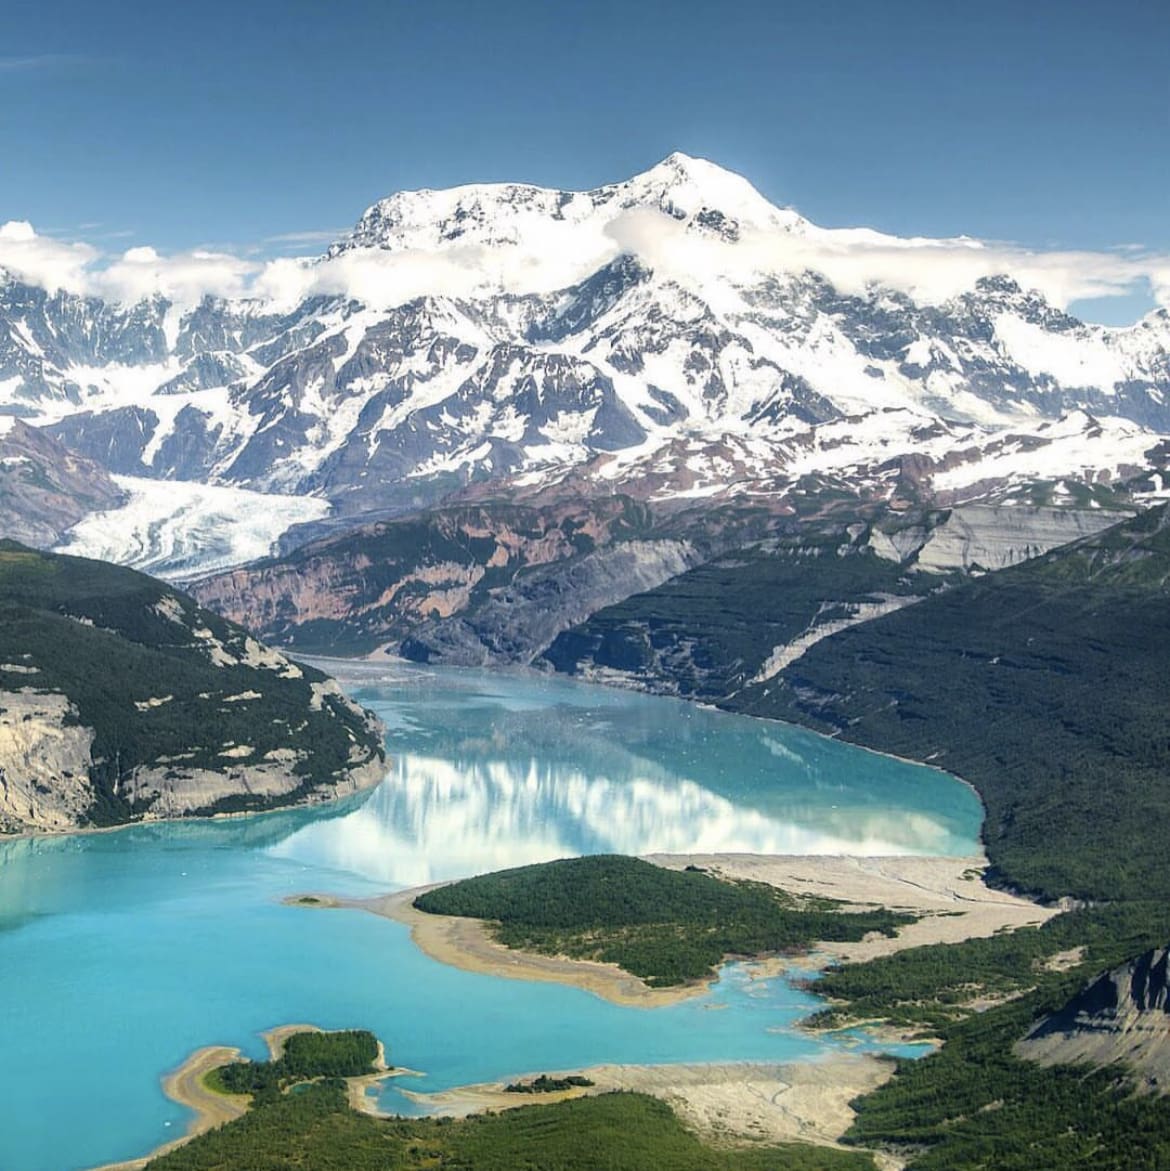 Mount Saint Elias, Alaska - Climbing The 10 Tallest Mountains in the USA